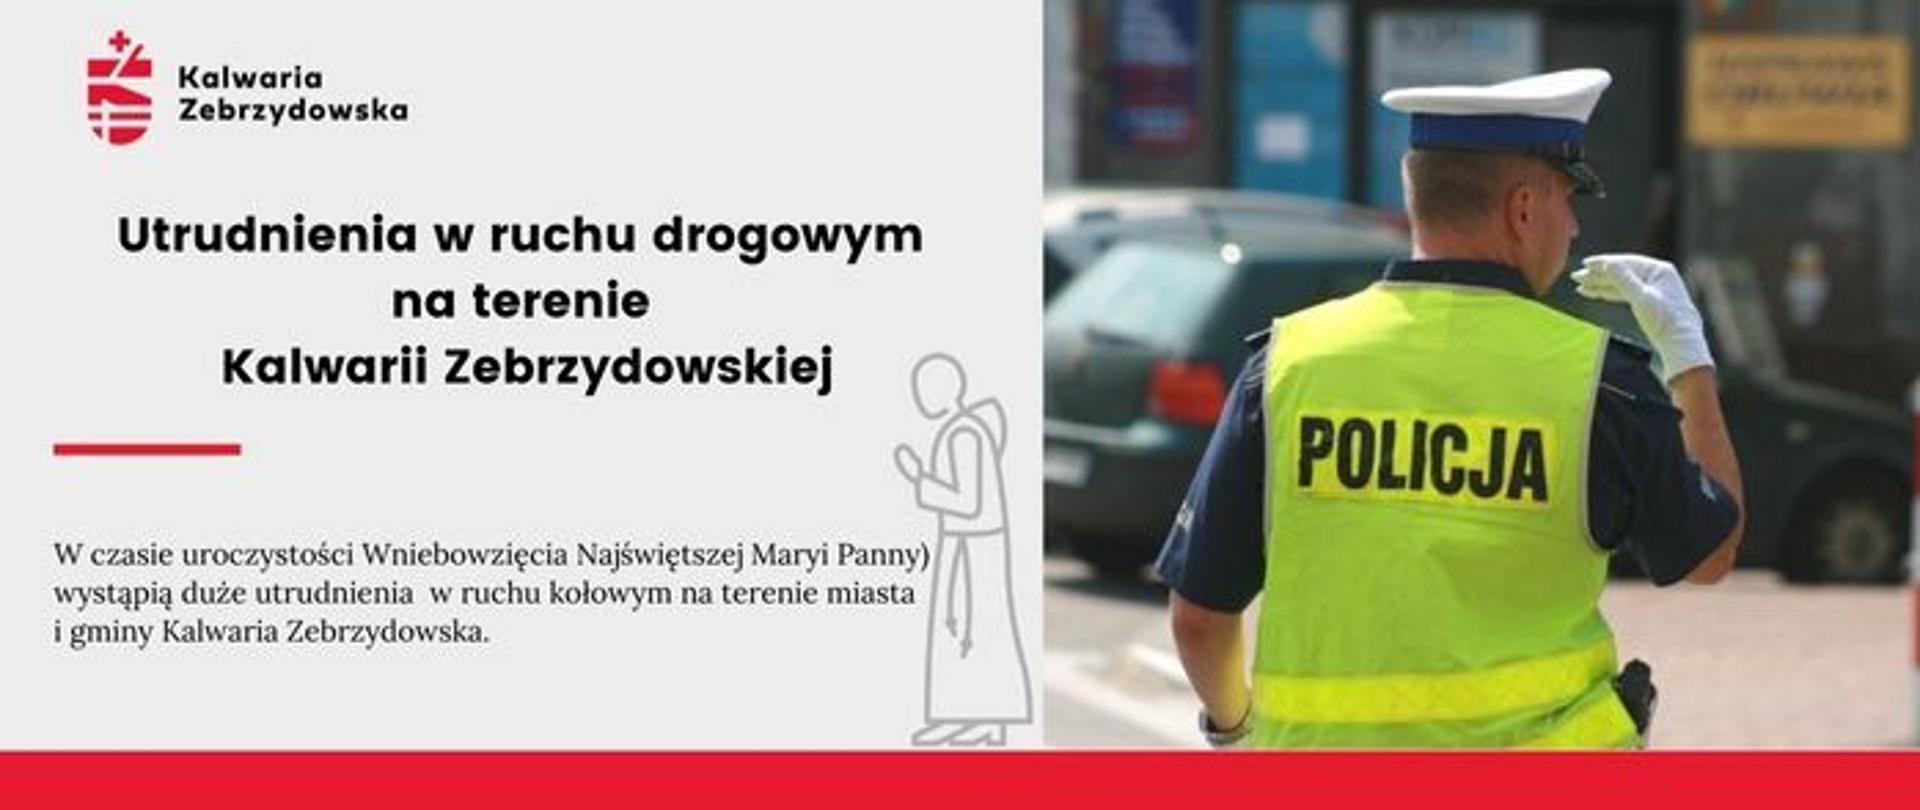 Plansza informująca o utrudnieniach w ruchu drogowym na terenie Kalwarii Zebrzydowskiej, po prawej stronie sylwetka policjanta, po lewej tekst z informacją. 